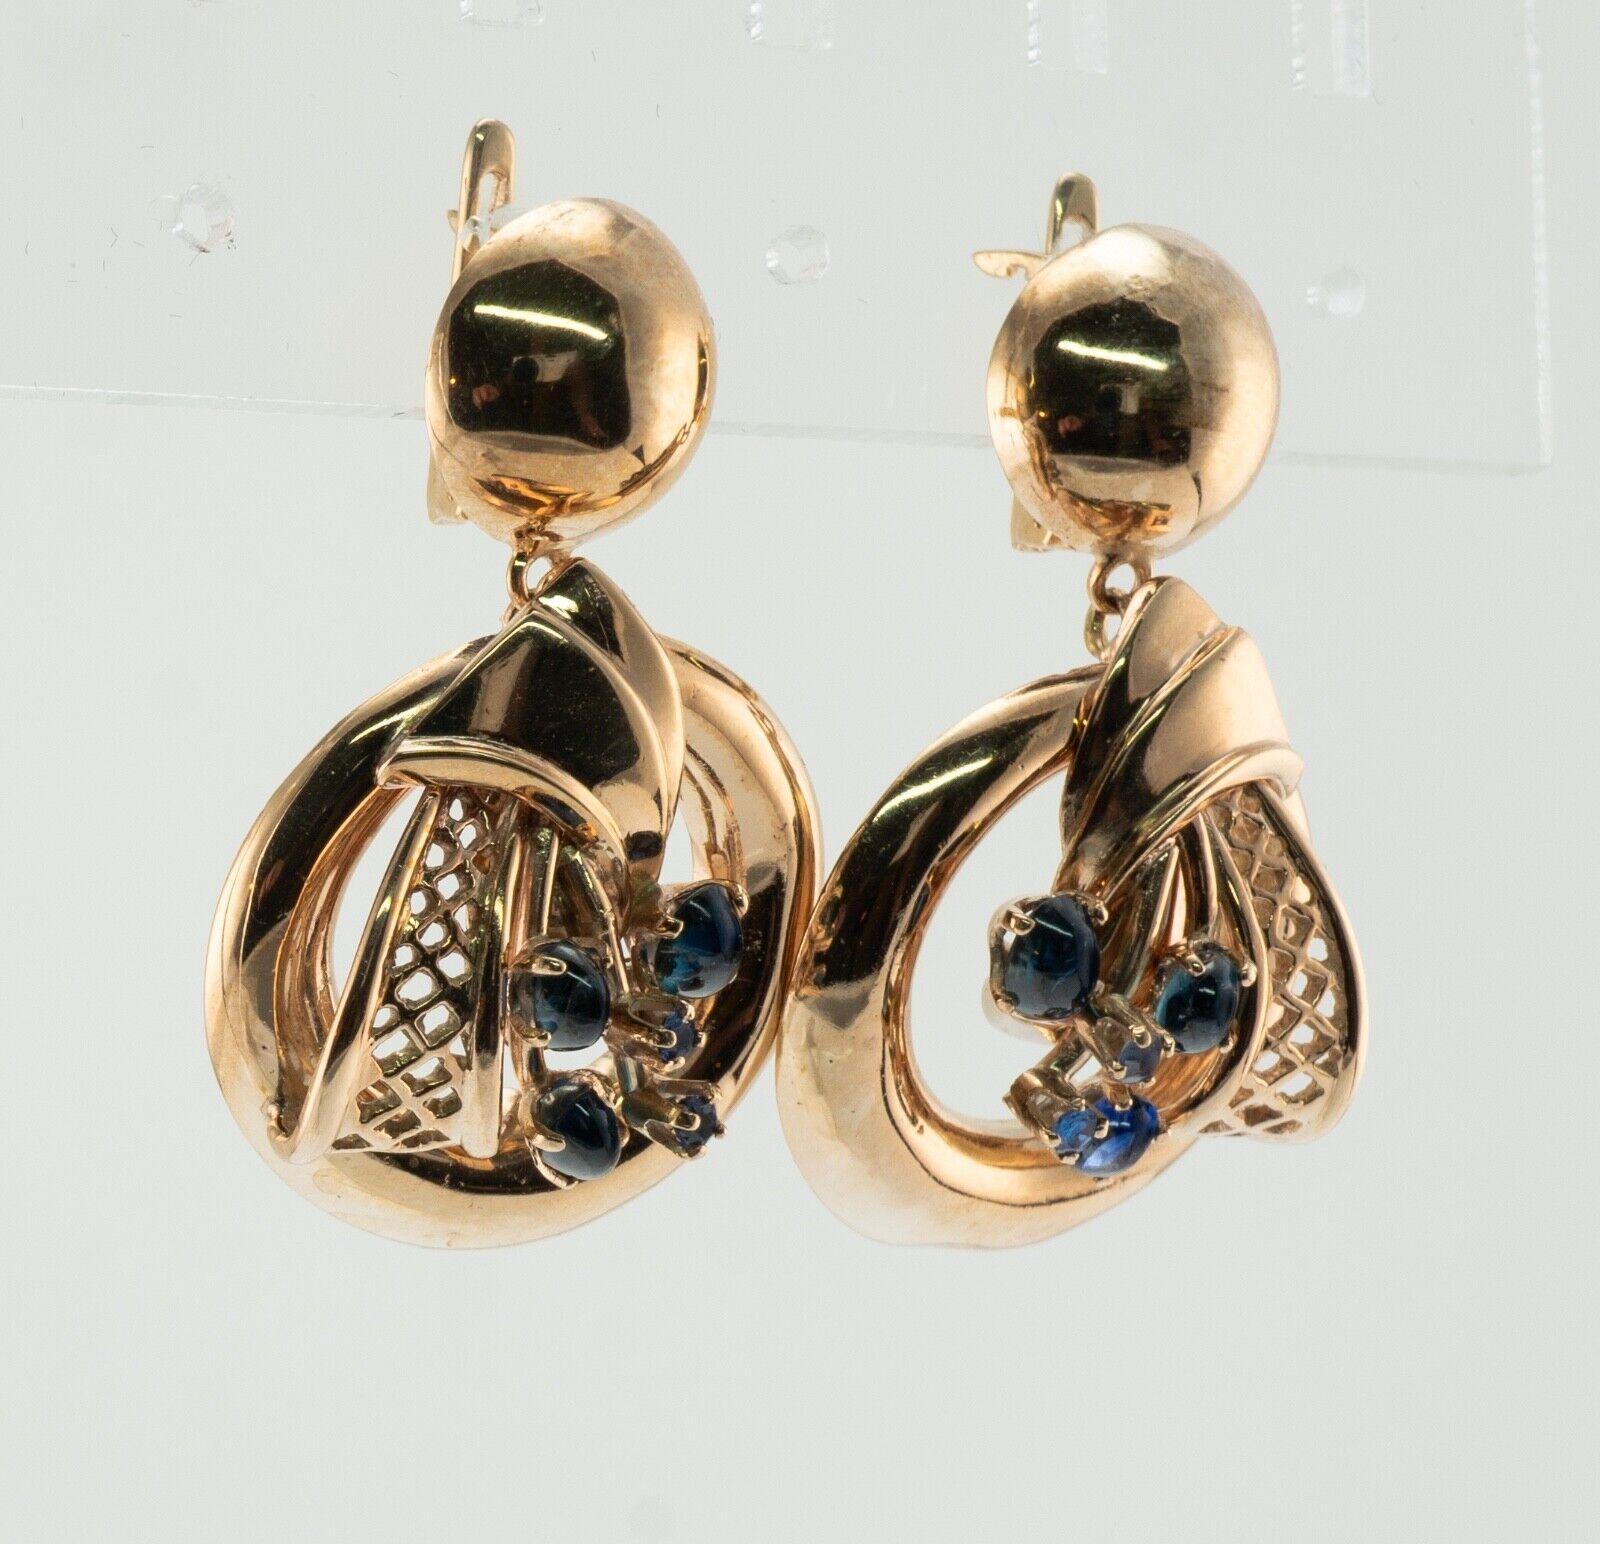 Natürlicher Saphir Ohrringe Drop Dangle 14K Gold Vintage By

Dieses Paar Ohrringe im Vintage-Stil ist aus massivem 14 Karat Gelbgold gefertigt (sorgfältig geprüft und garantiert). Jeder Ohrring enthält drei natürliche Saphir-Cabochons und zwei rund